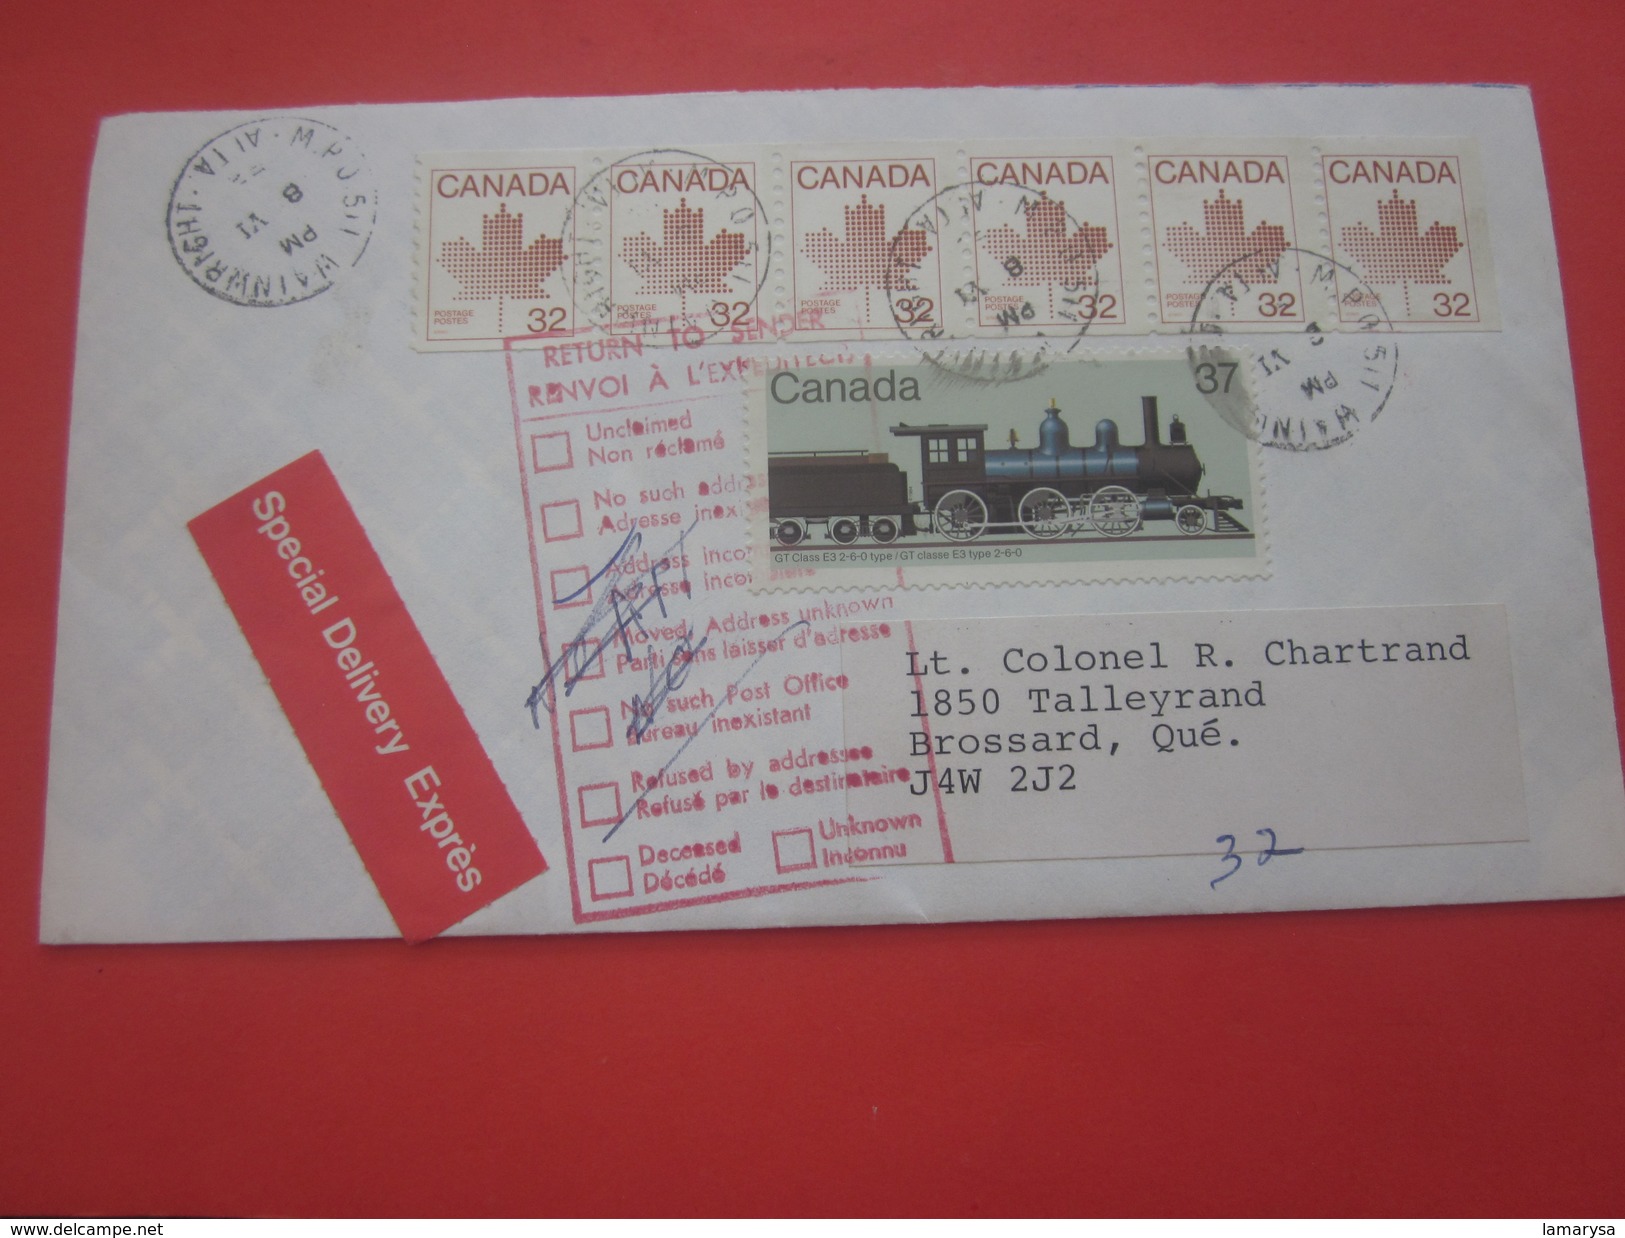 Amérique -Canada-Poste Aérienne Exprès Spécial Delivery- Lettre & Document Marcophilie Par Avion - By Air-mail.. - Posta Aerea: Espressi